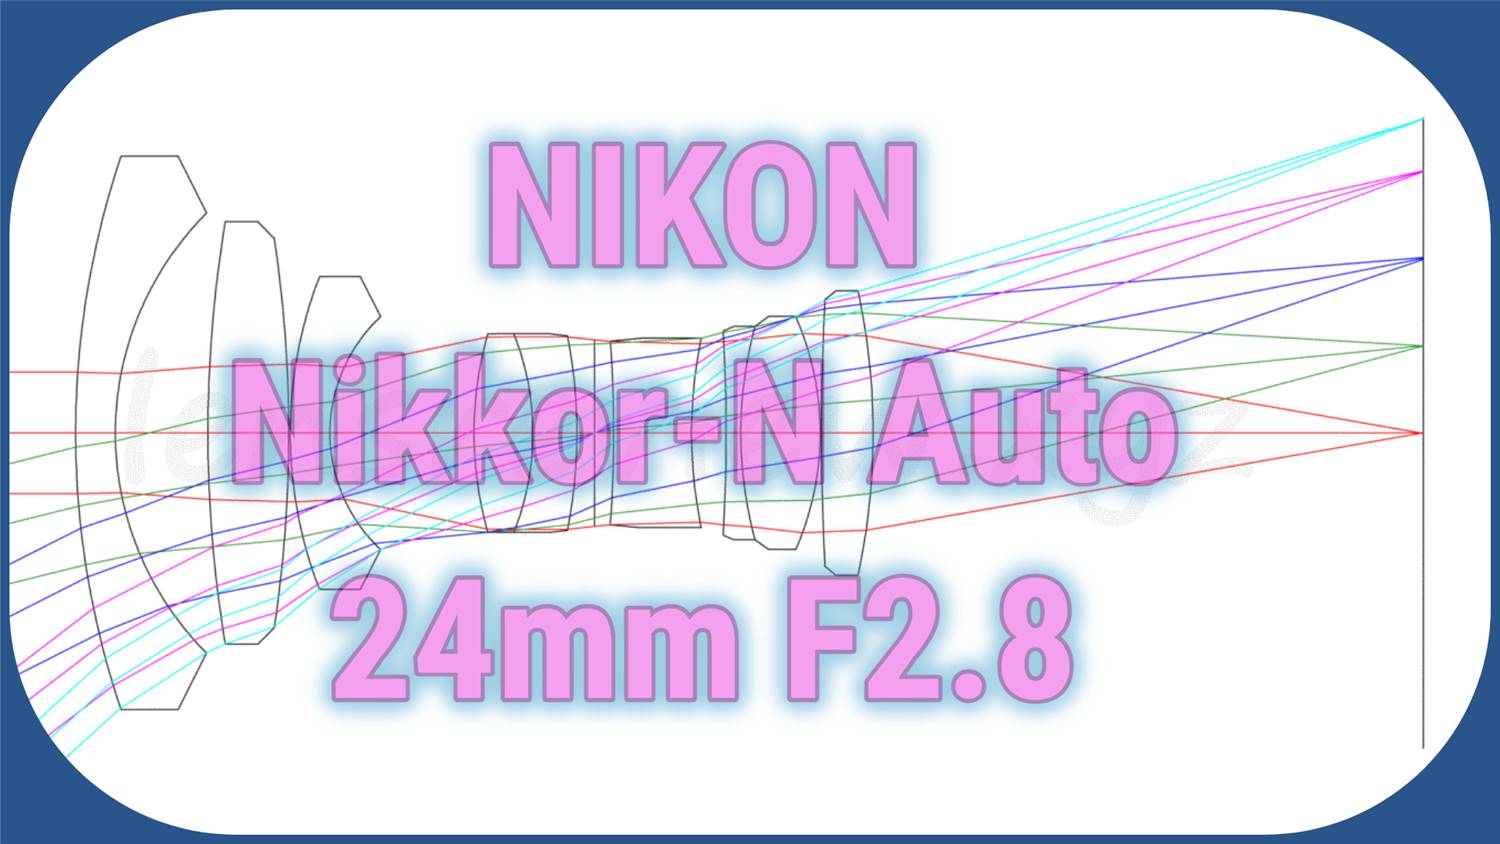 レンズのプロが解説】NIKON Nikkor-N Auto 24mm F2.8 -分析082 - LENS 